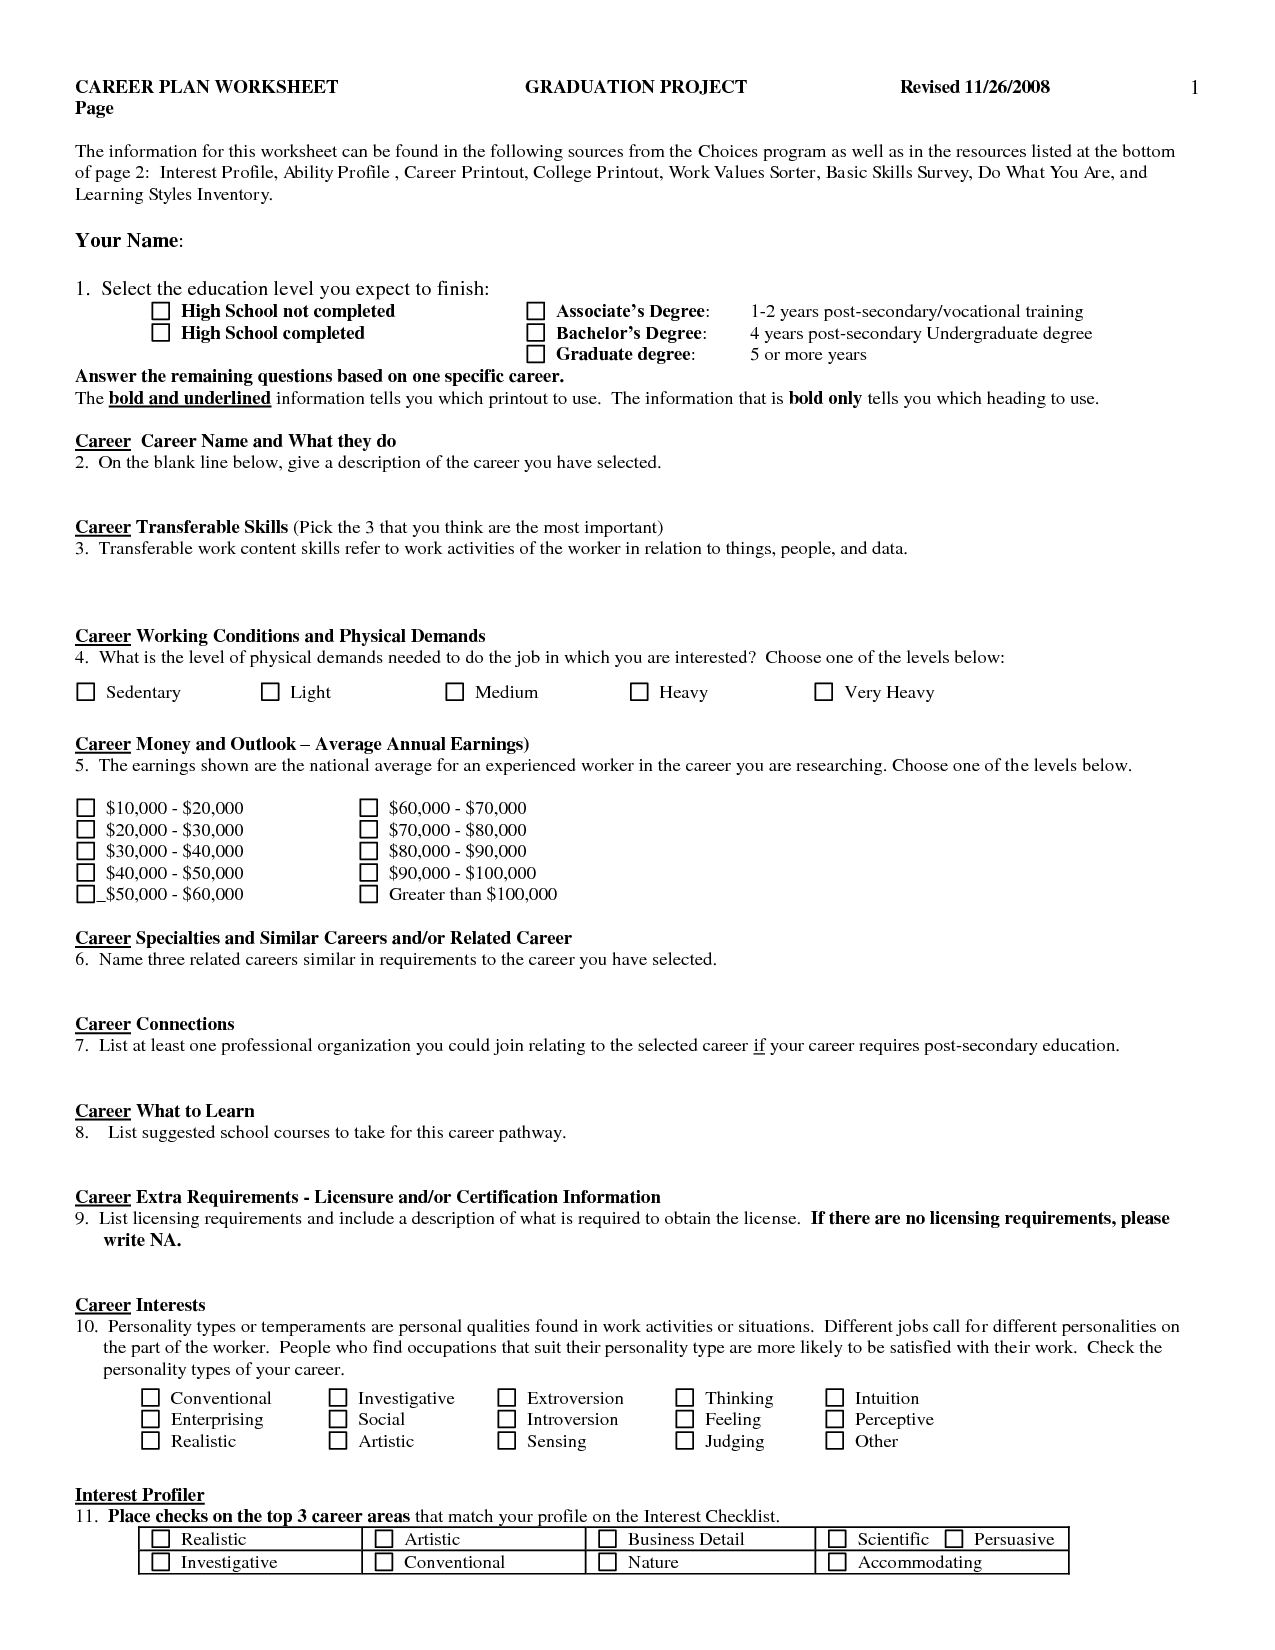 High School Career Planning Worksheet Image